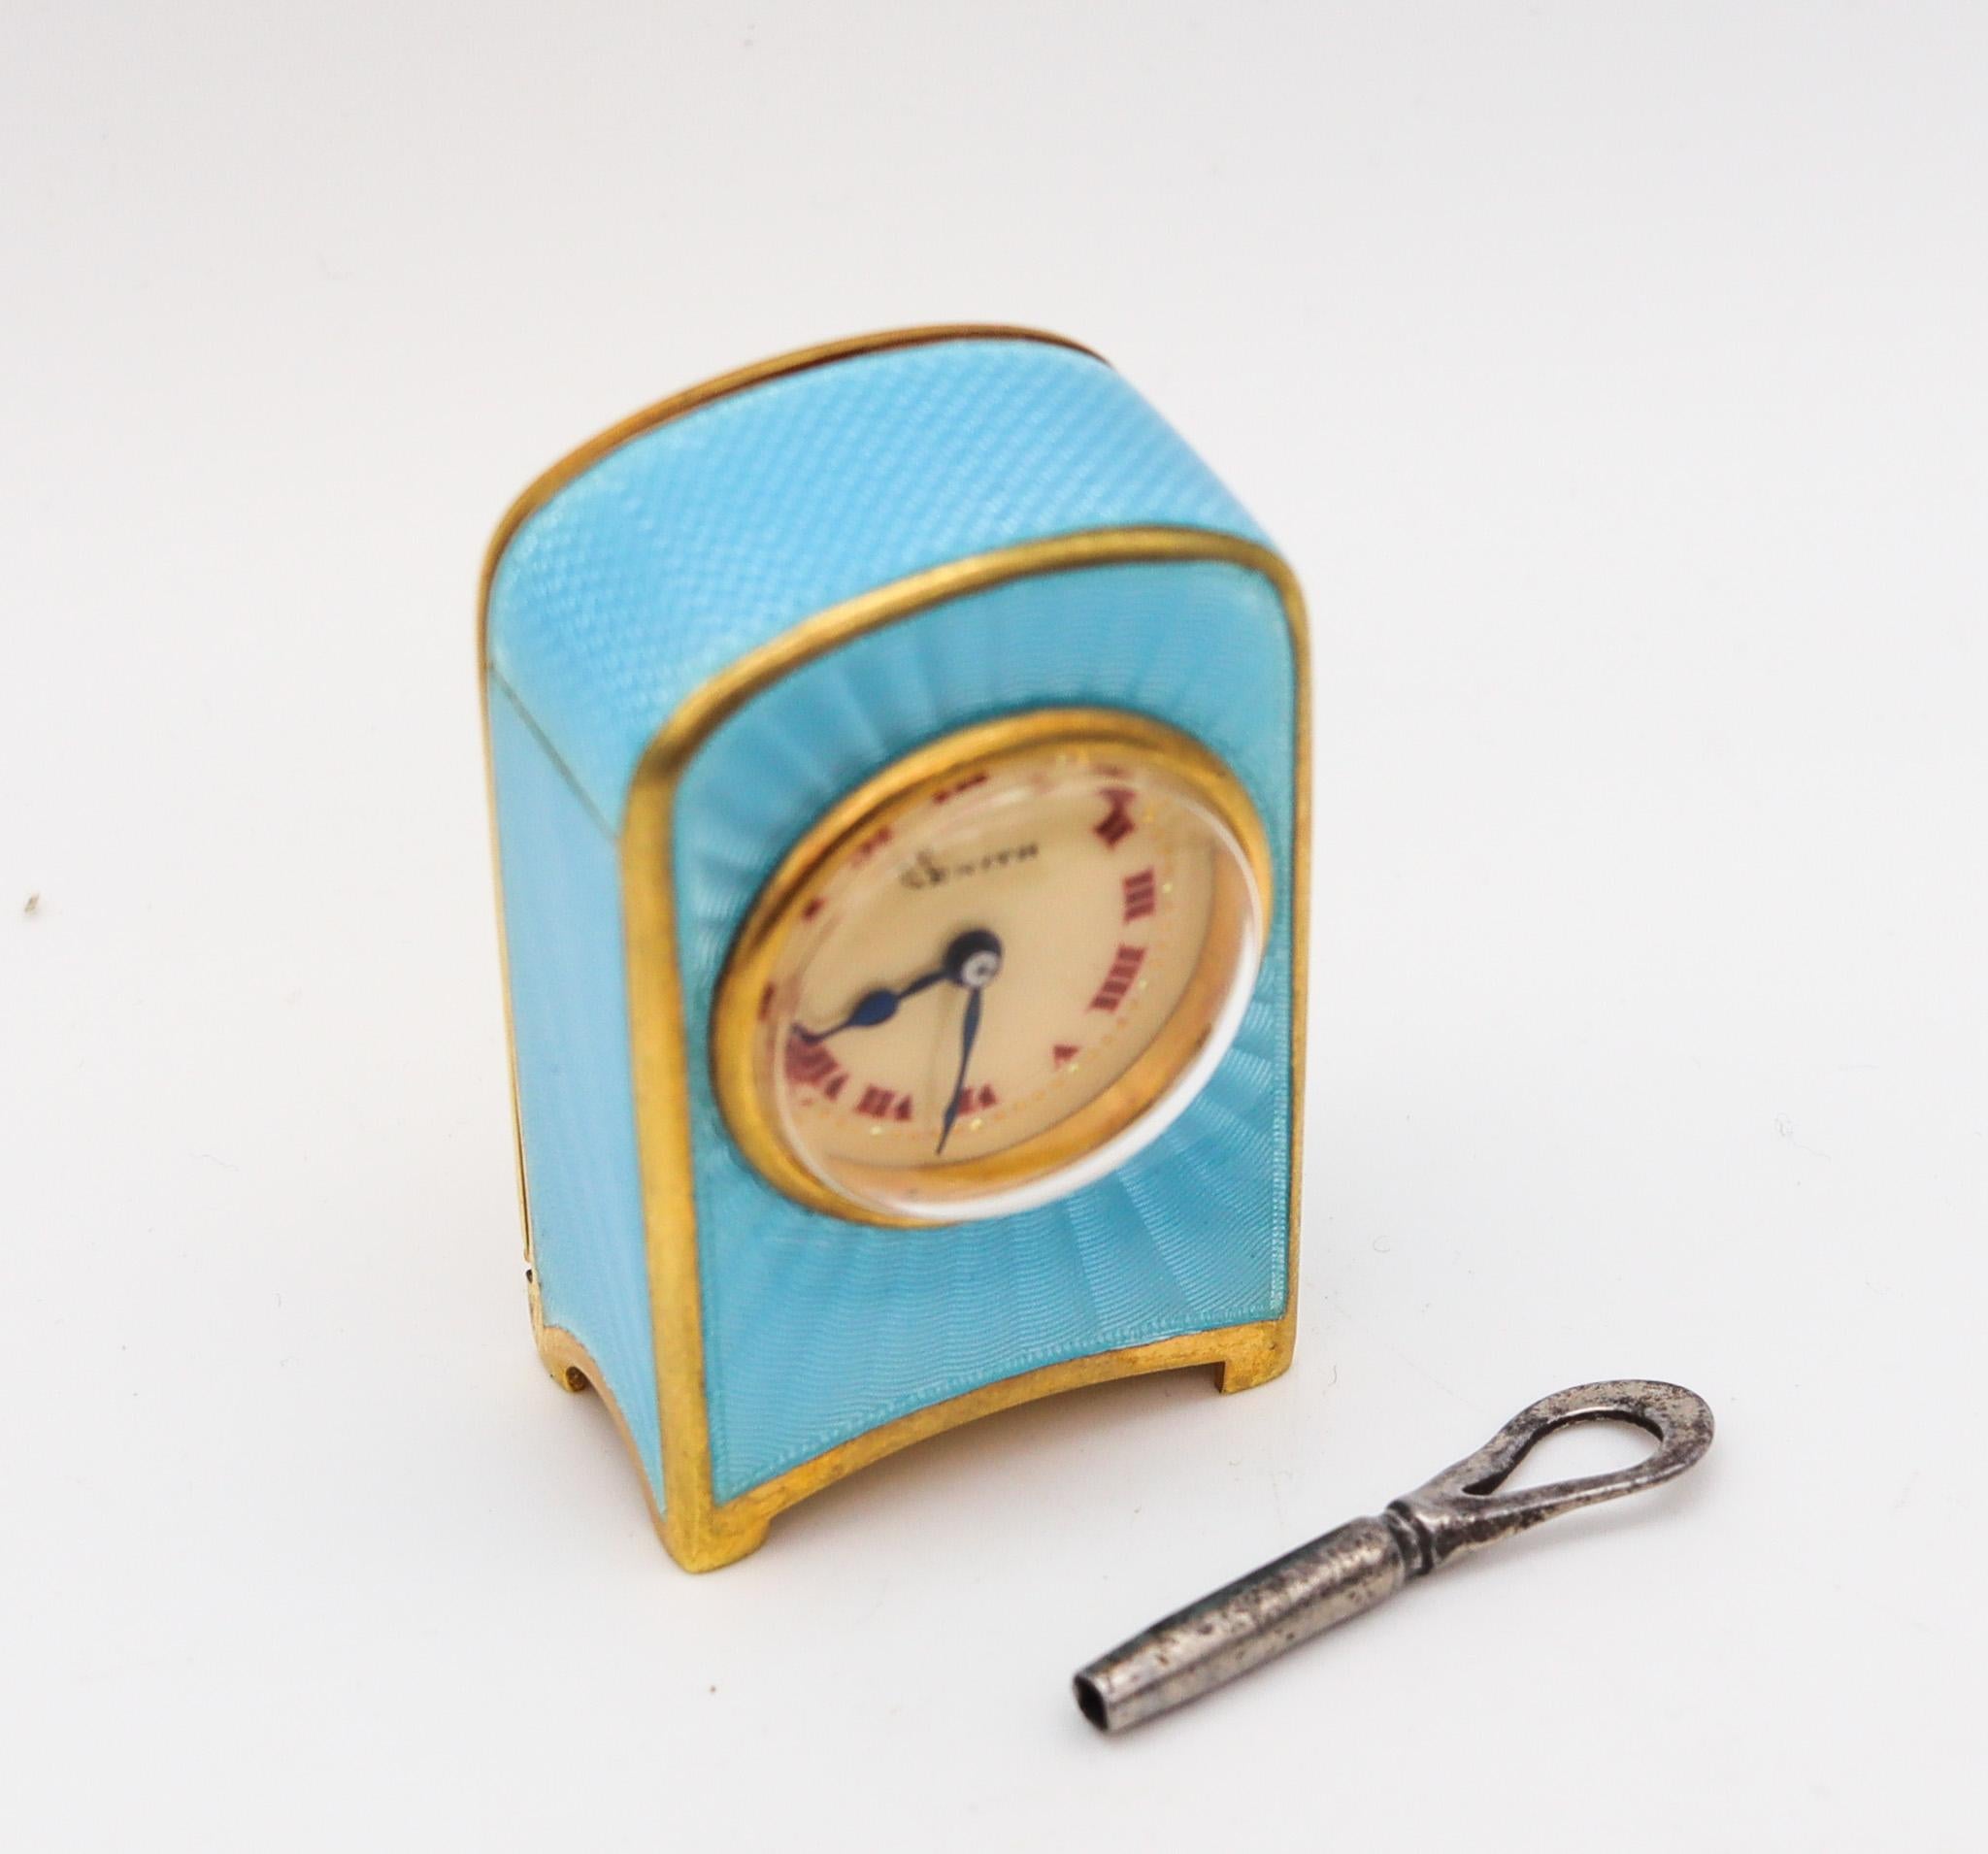 Une horloge de voyage miniature conçue par Zenith.

Magnifique horloge miniature pour voiture de voyage, fabriquée à Genève en Suisse par Zenith. Cette petite horloge ancienne est exceptionnelle. Elle a été créée à l'époque édouardienne, dans les